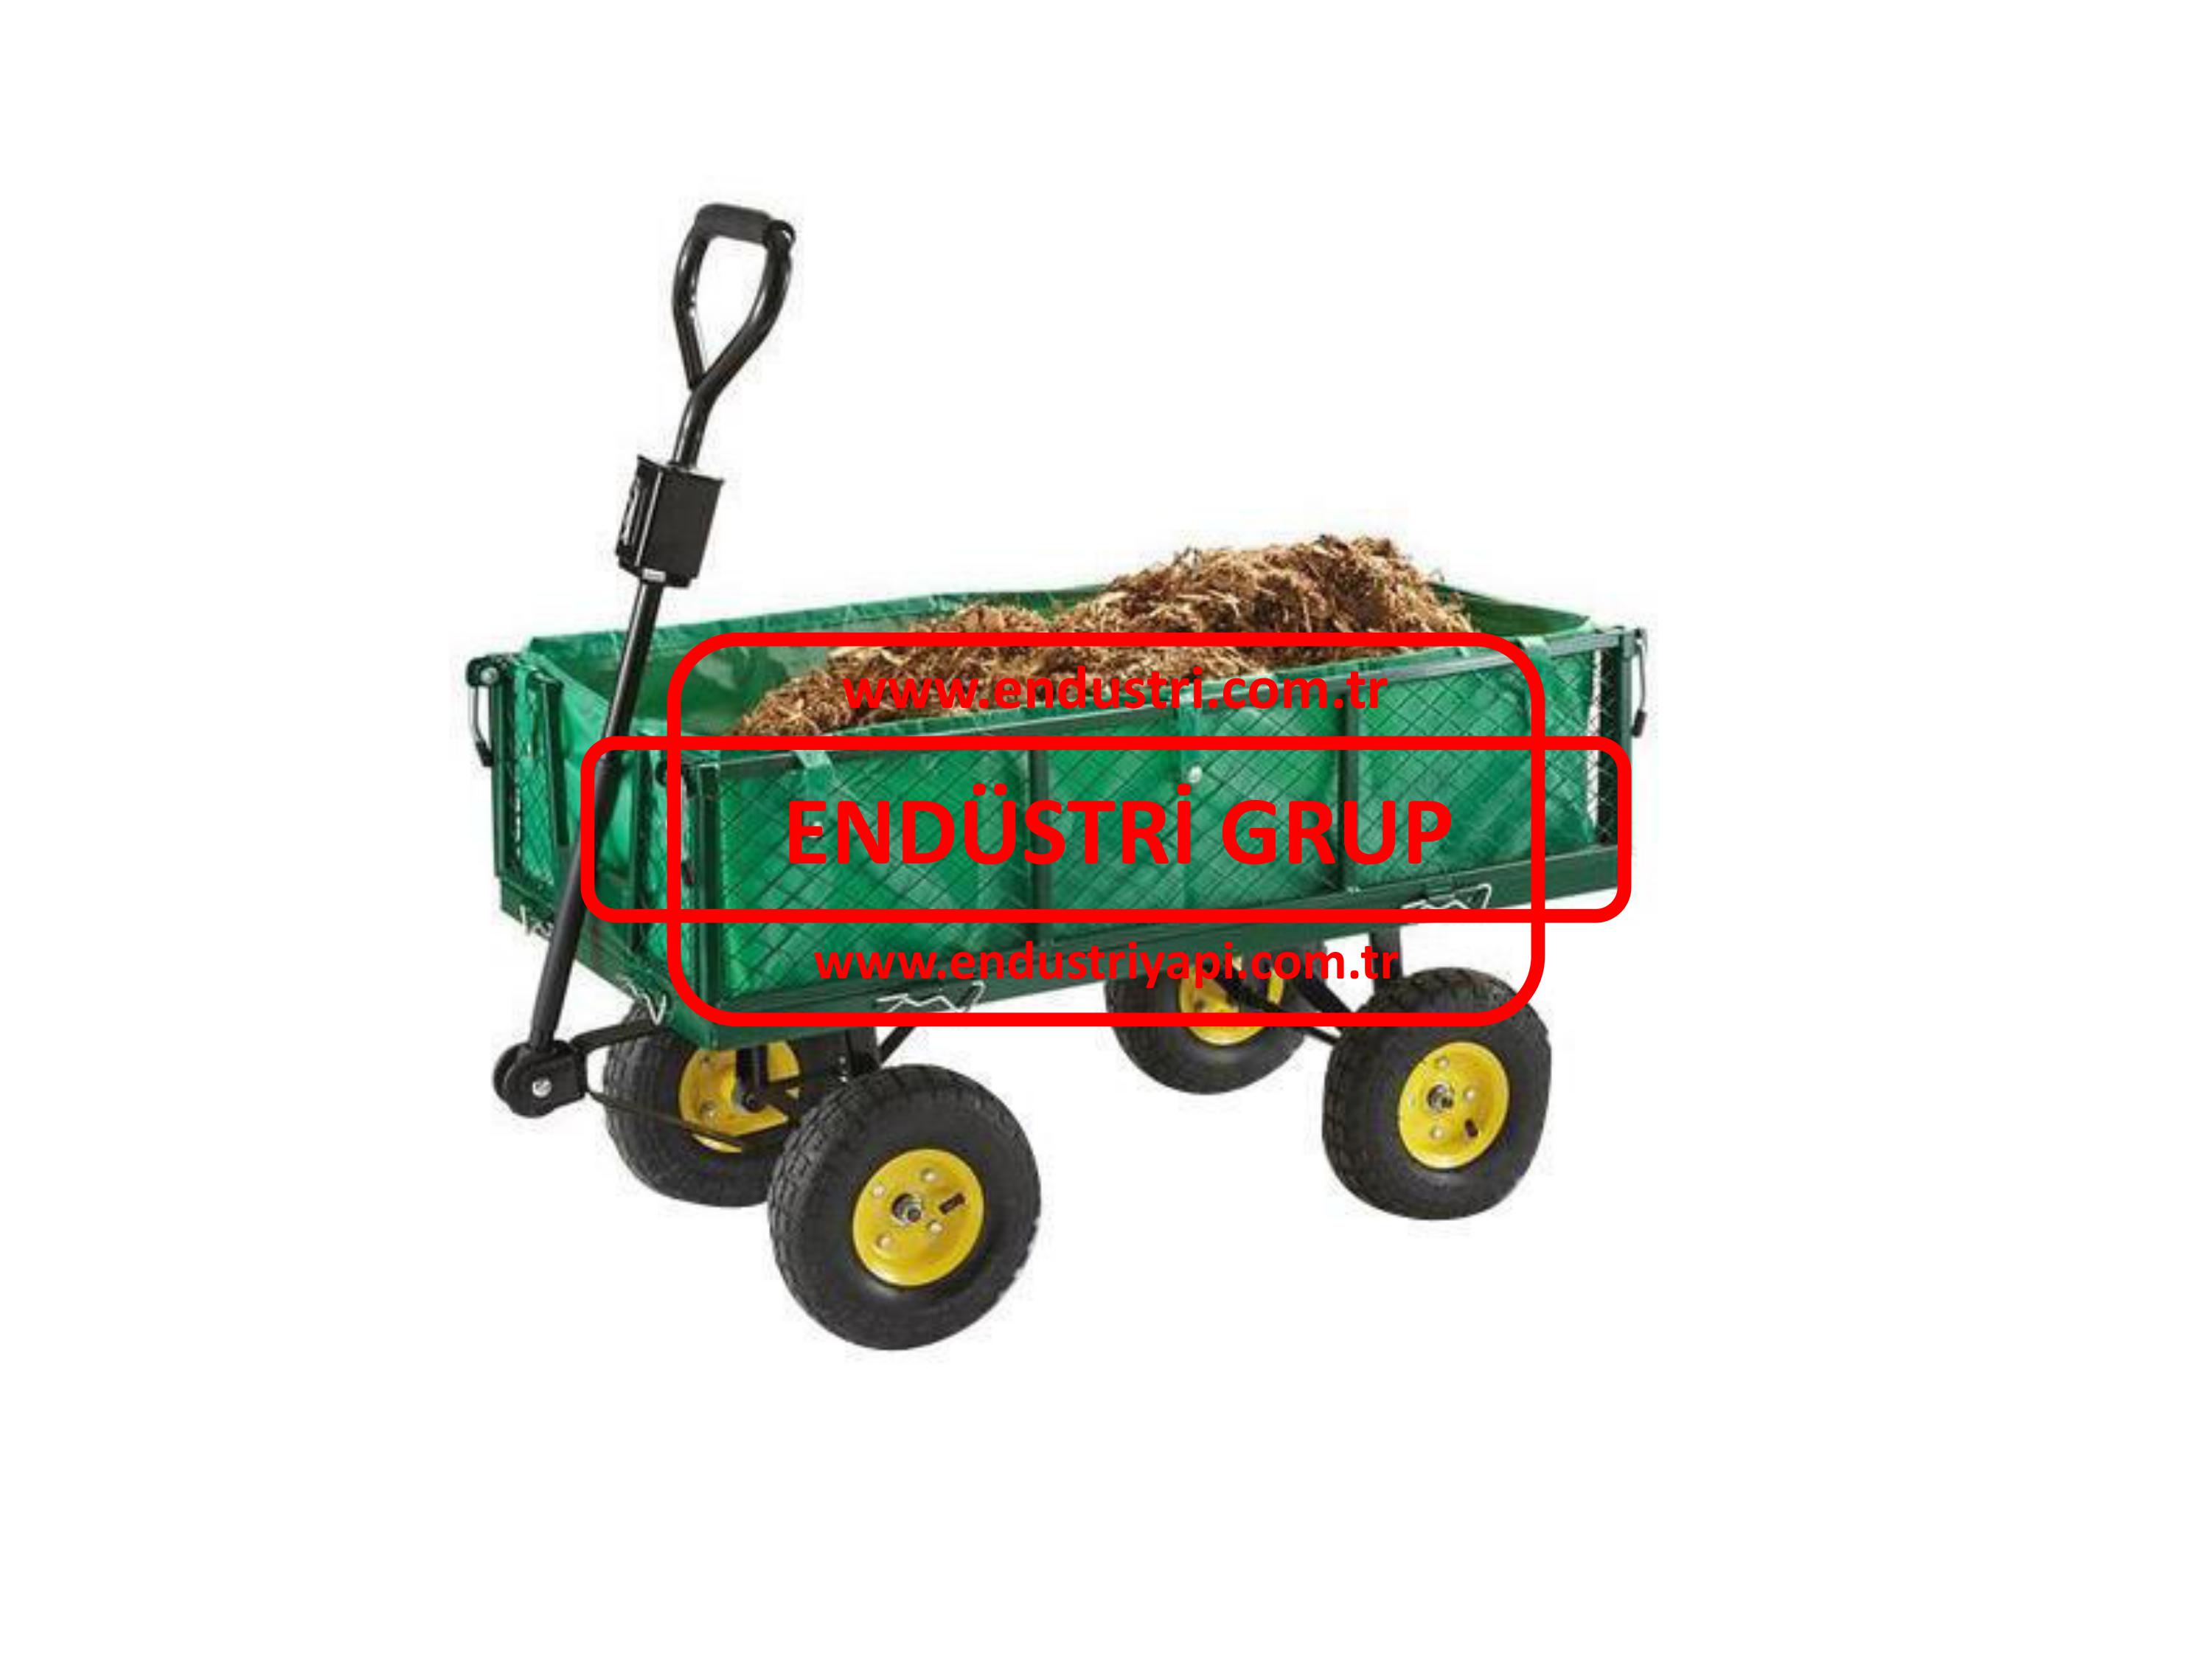 bahce-odun-ekipman-cicek-toprak-tasima-kaldirma-yukleme-arabasi-arabalari-imalati